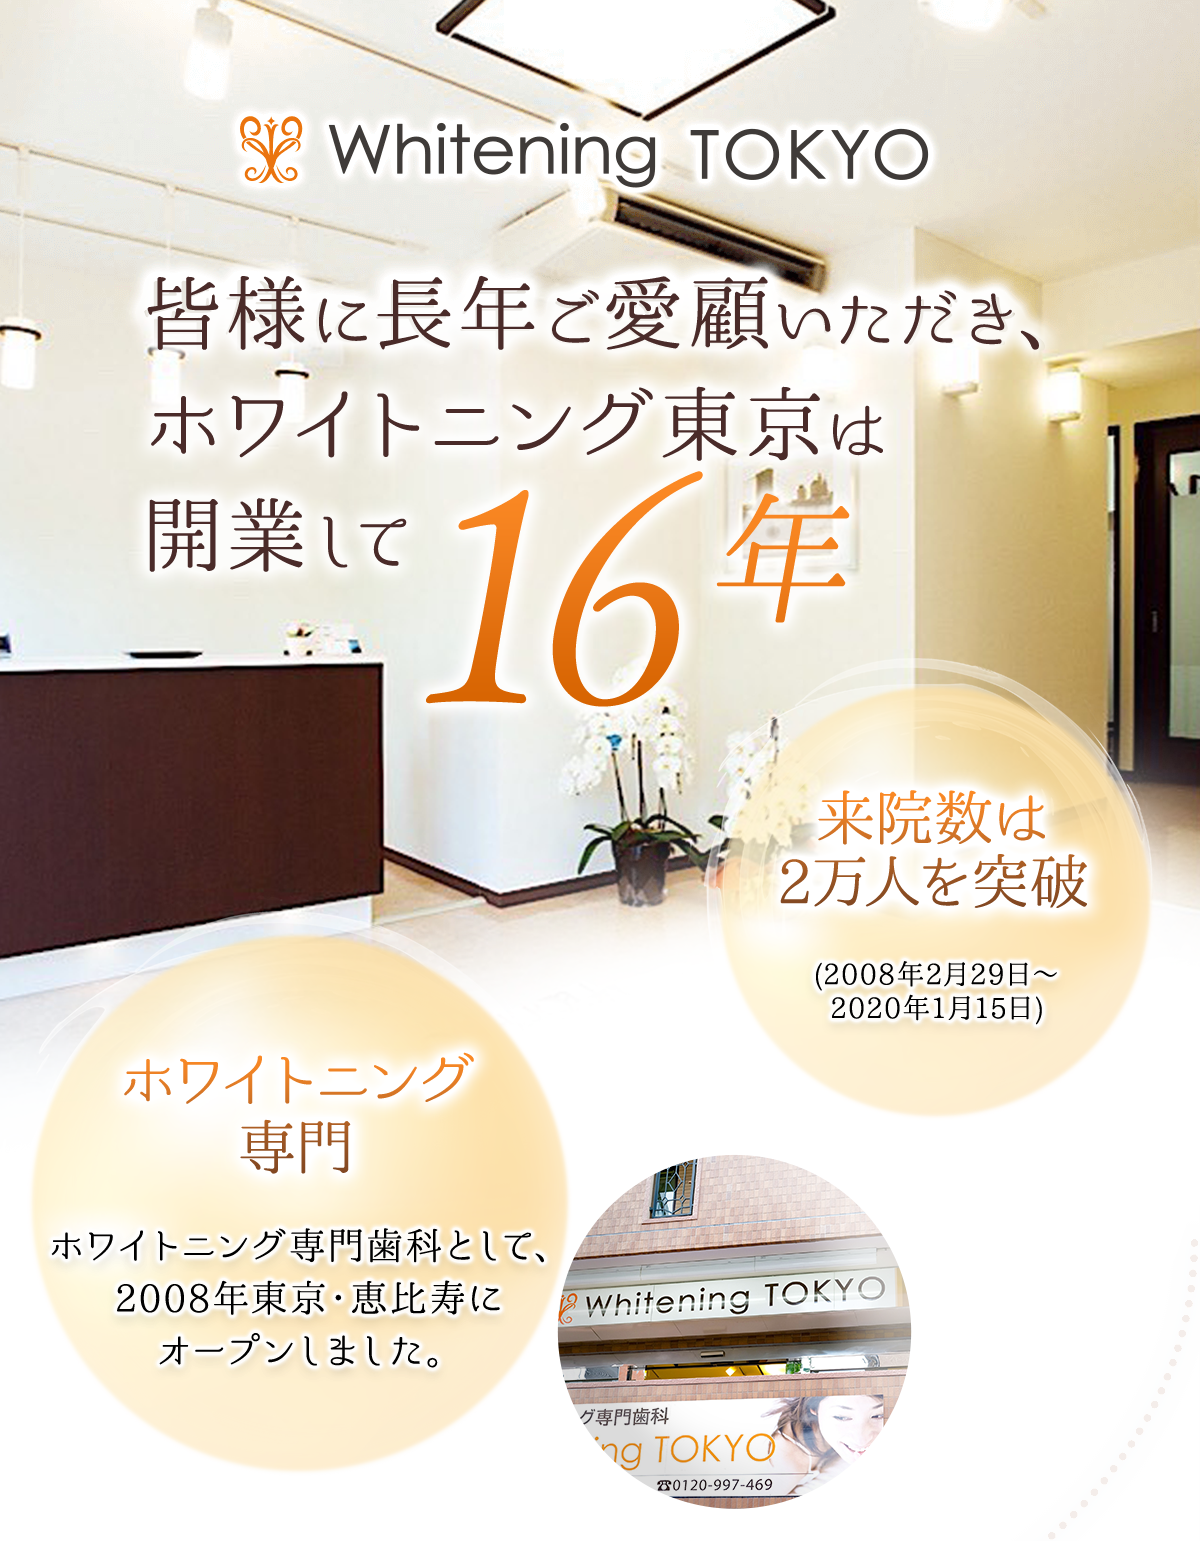 皆様に長年ご愛顧いただき、ホワイトニング東京は開業して12年 来院数は2万人を突破(2008年2月29日～2020年1月15日) ホワイトニング専門 ホワイトニング専門歯科として、2008年東京・恵比寿にオープンしました。